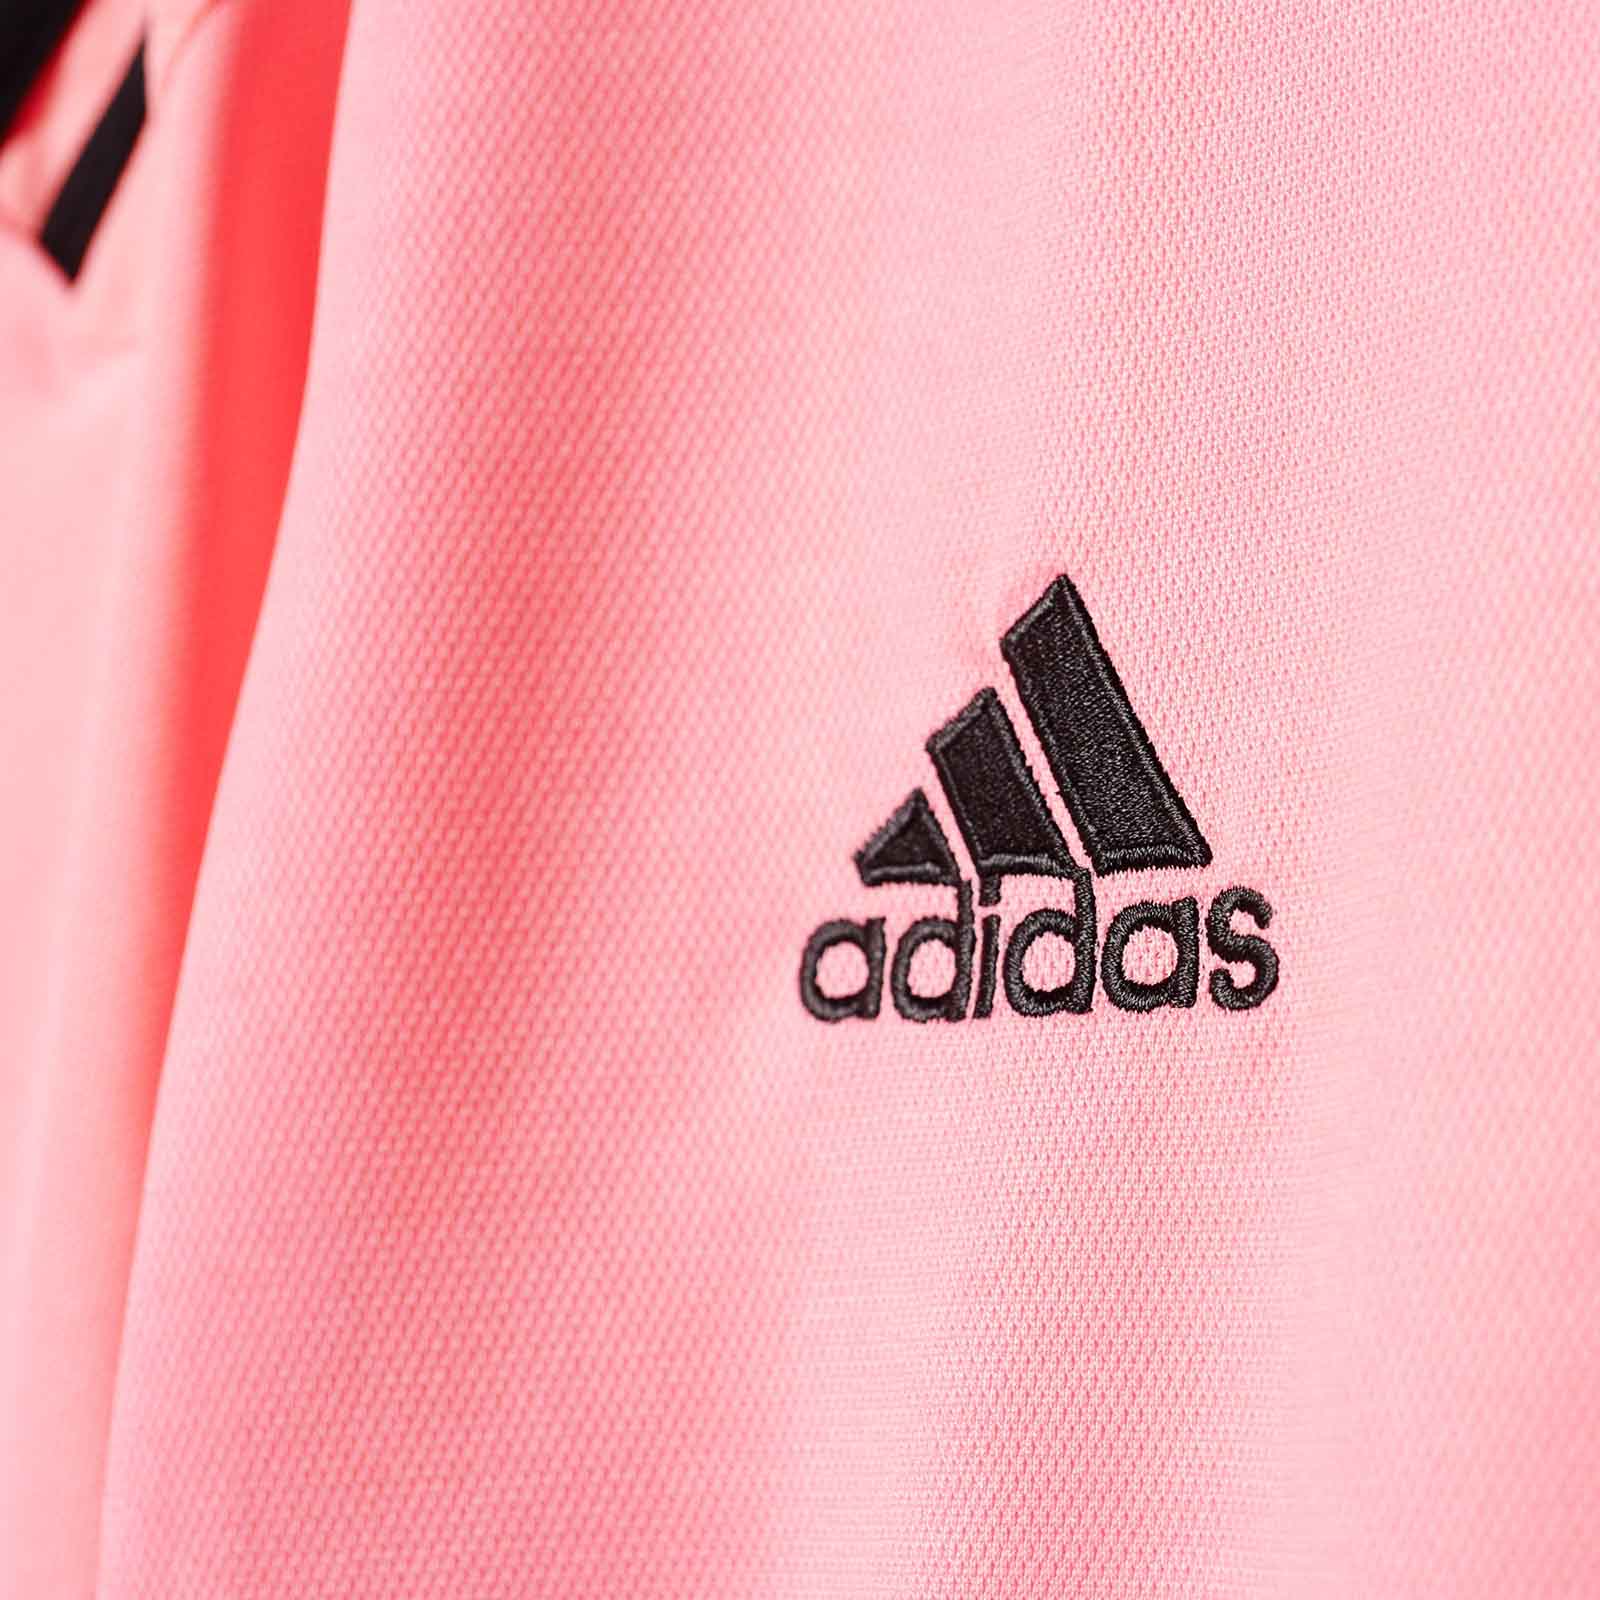 Pink Adidas Juventus 15-16 Away Kit Released - Footy Headlines